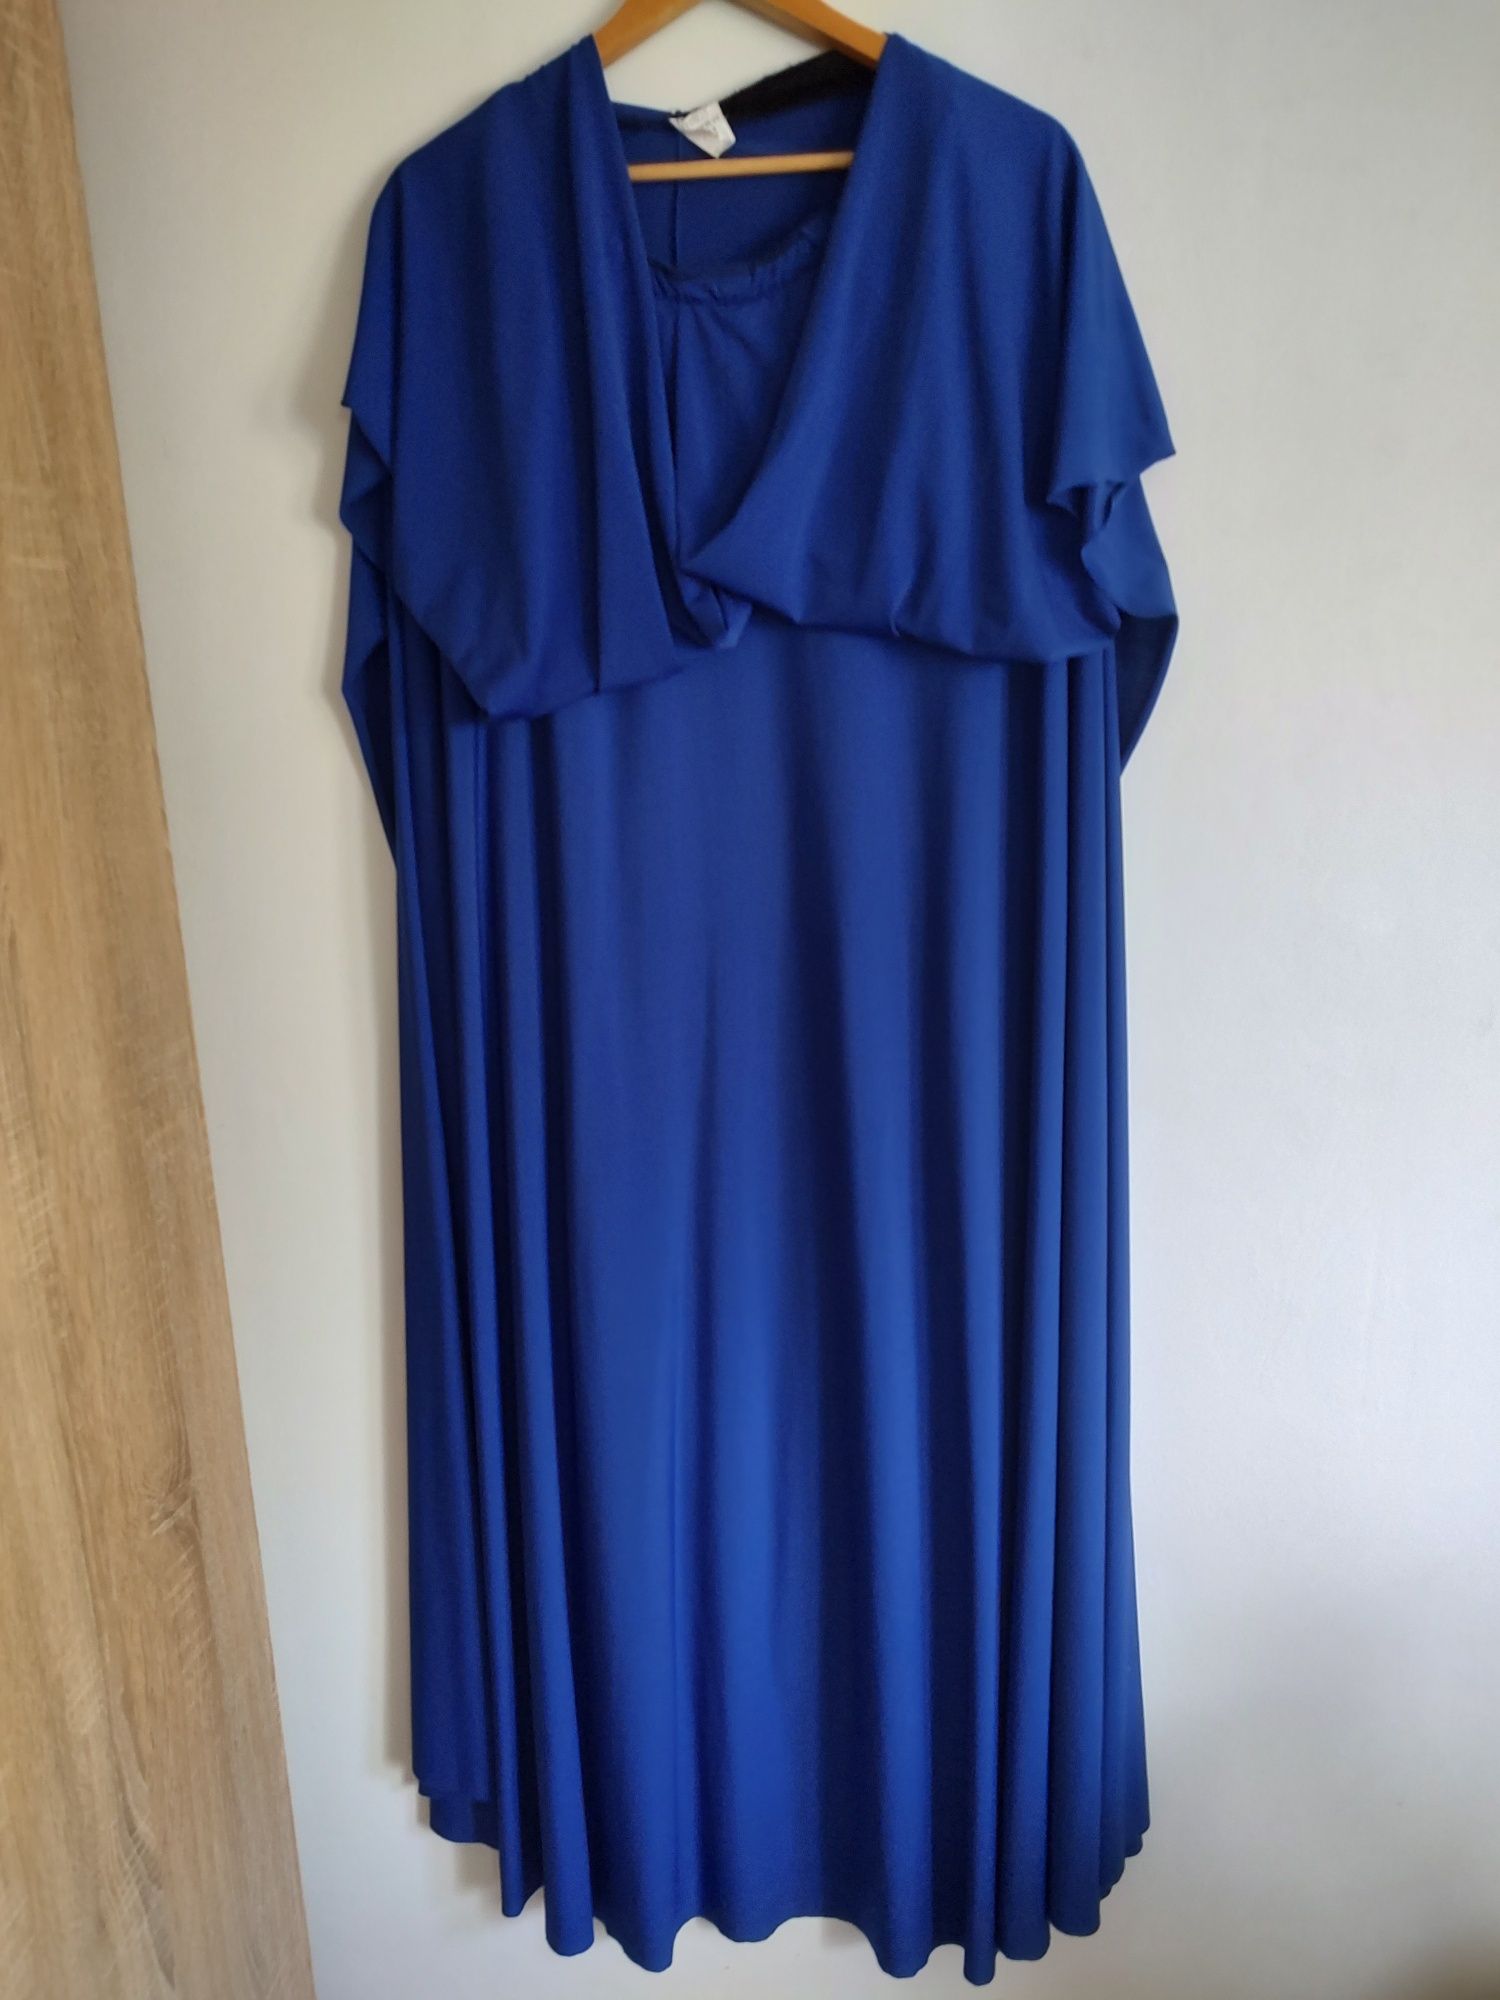 Rochie lunga albastră pentru evenimente